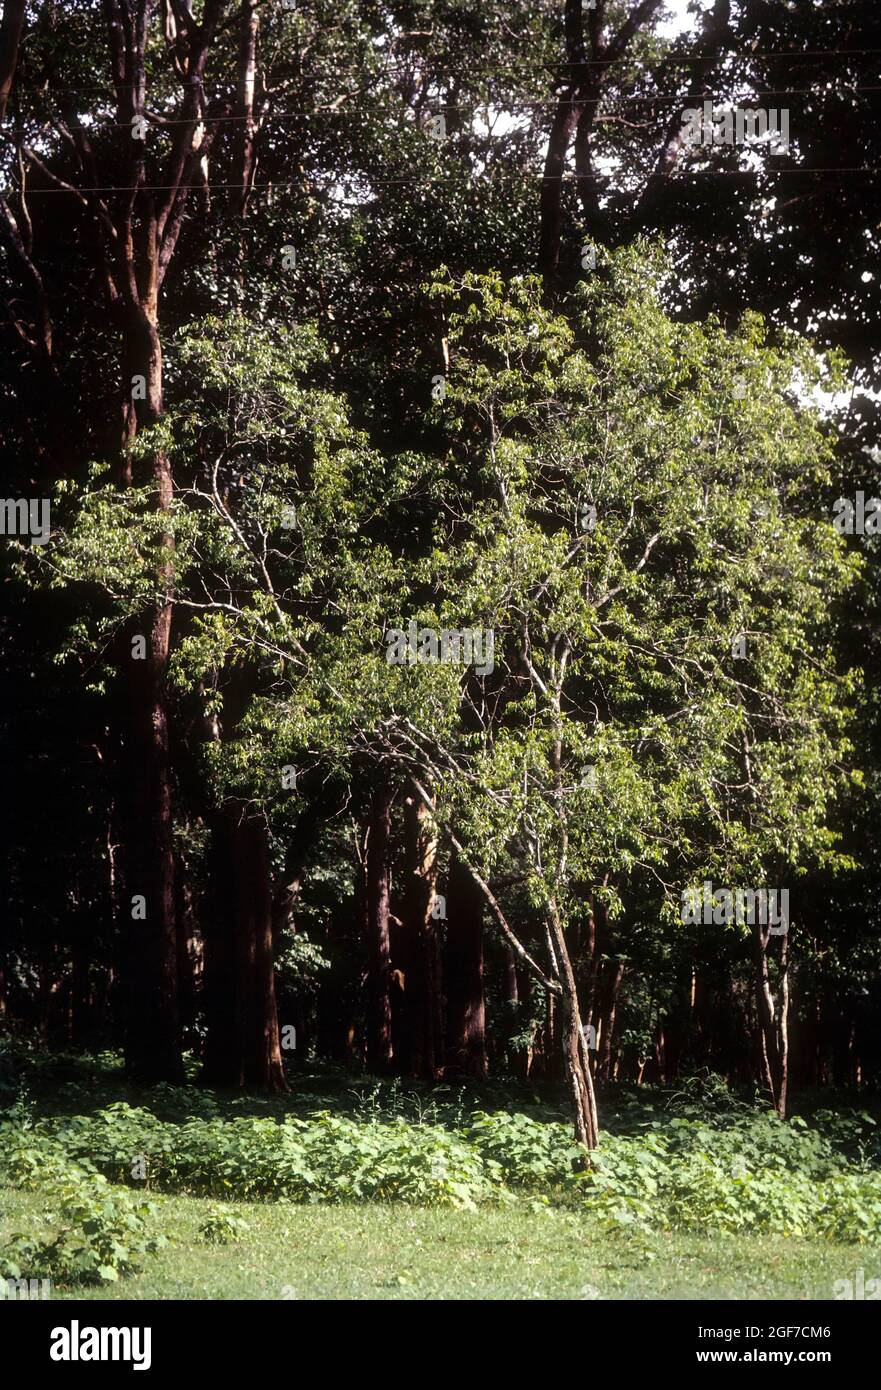 Sandalwood tree; Santalum album linn Stock Photo